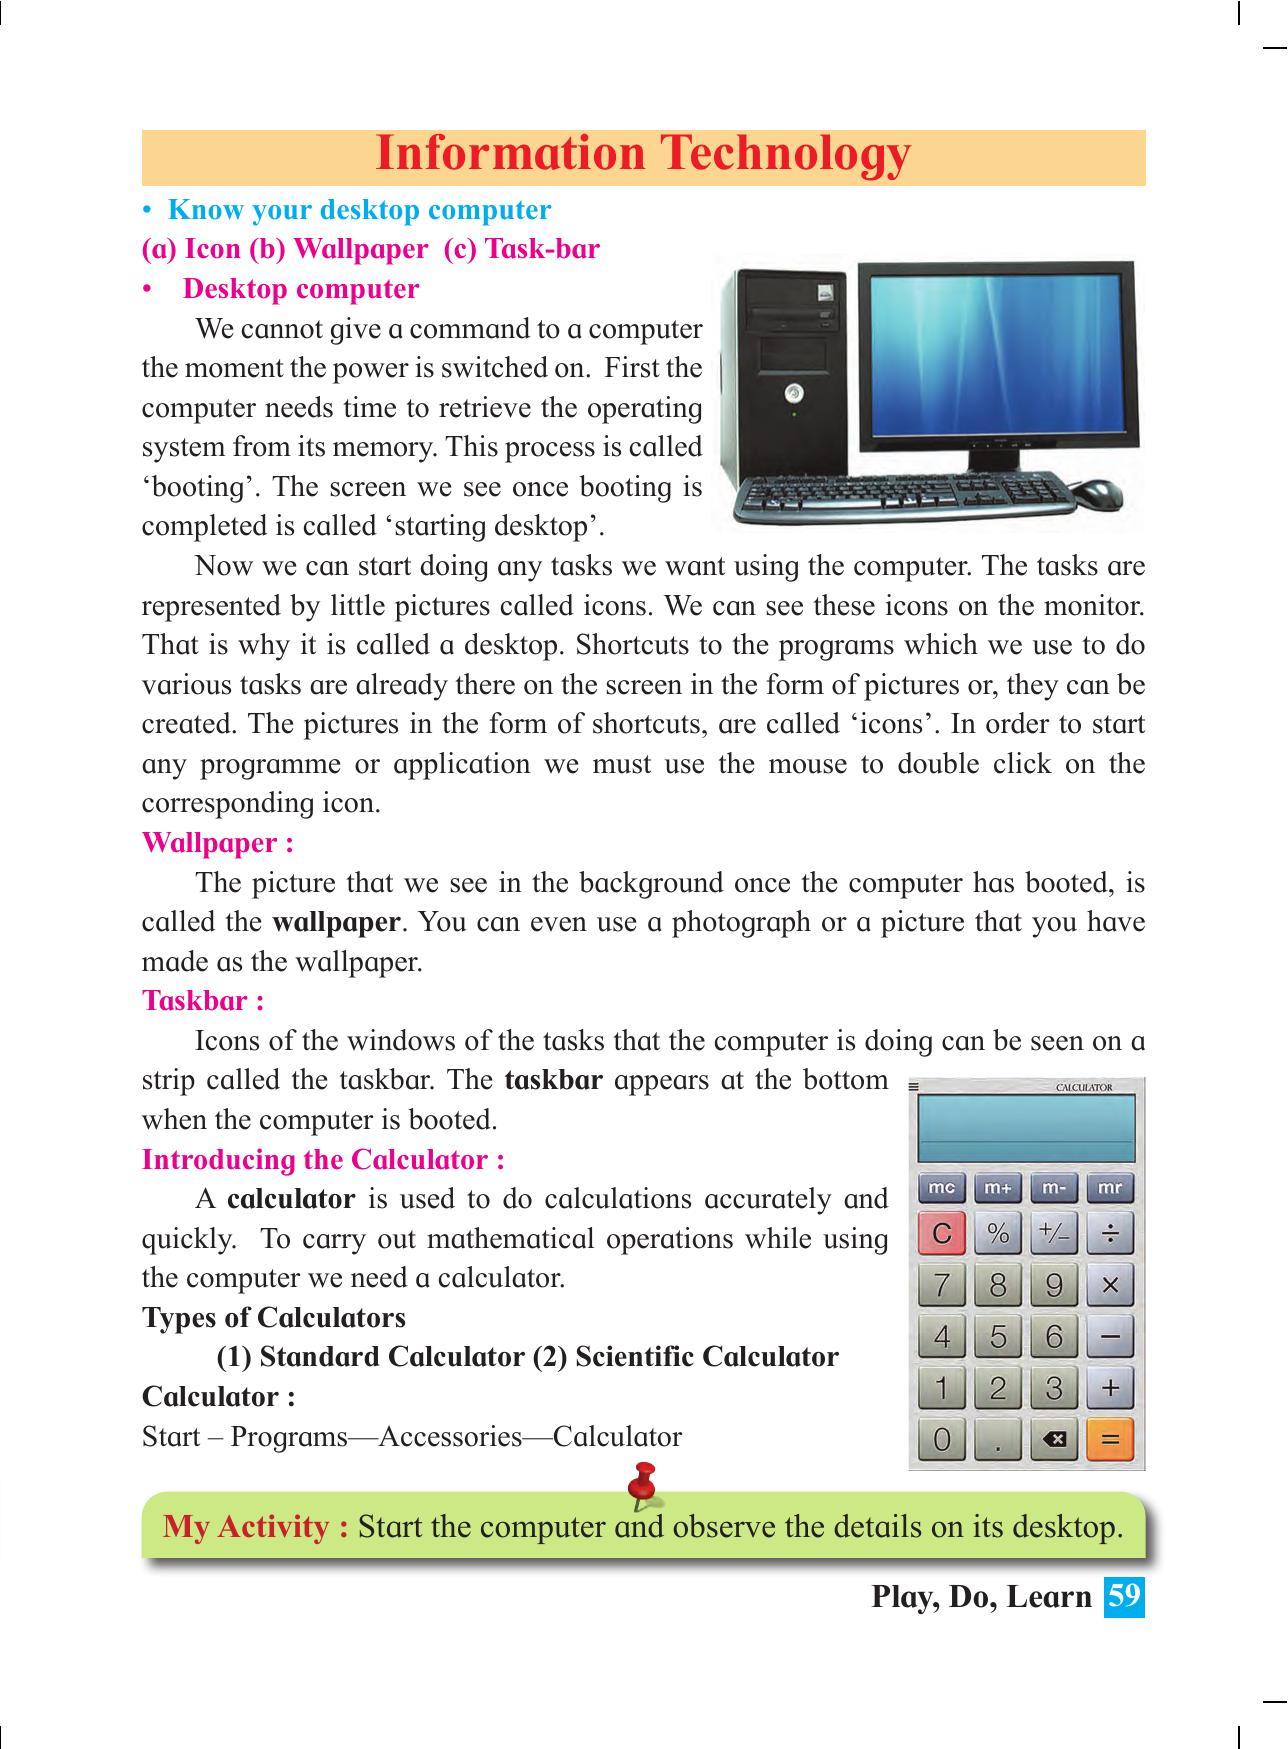 Maharashtra Board Class 4 Play Do Learn (English Medium) Textbook - Page 68